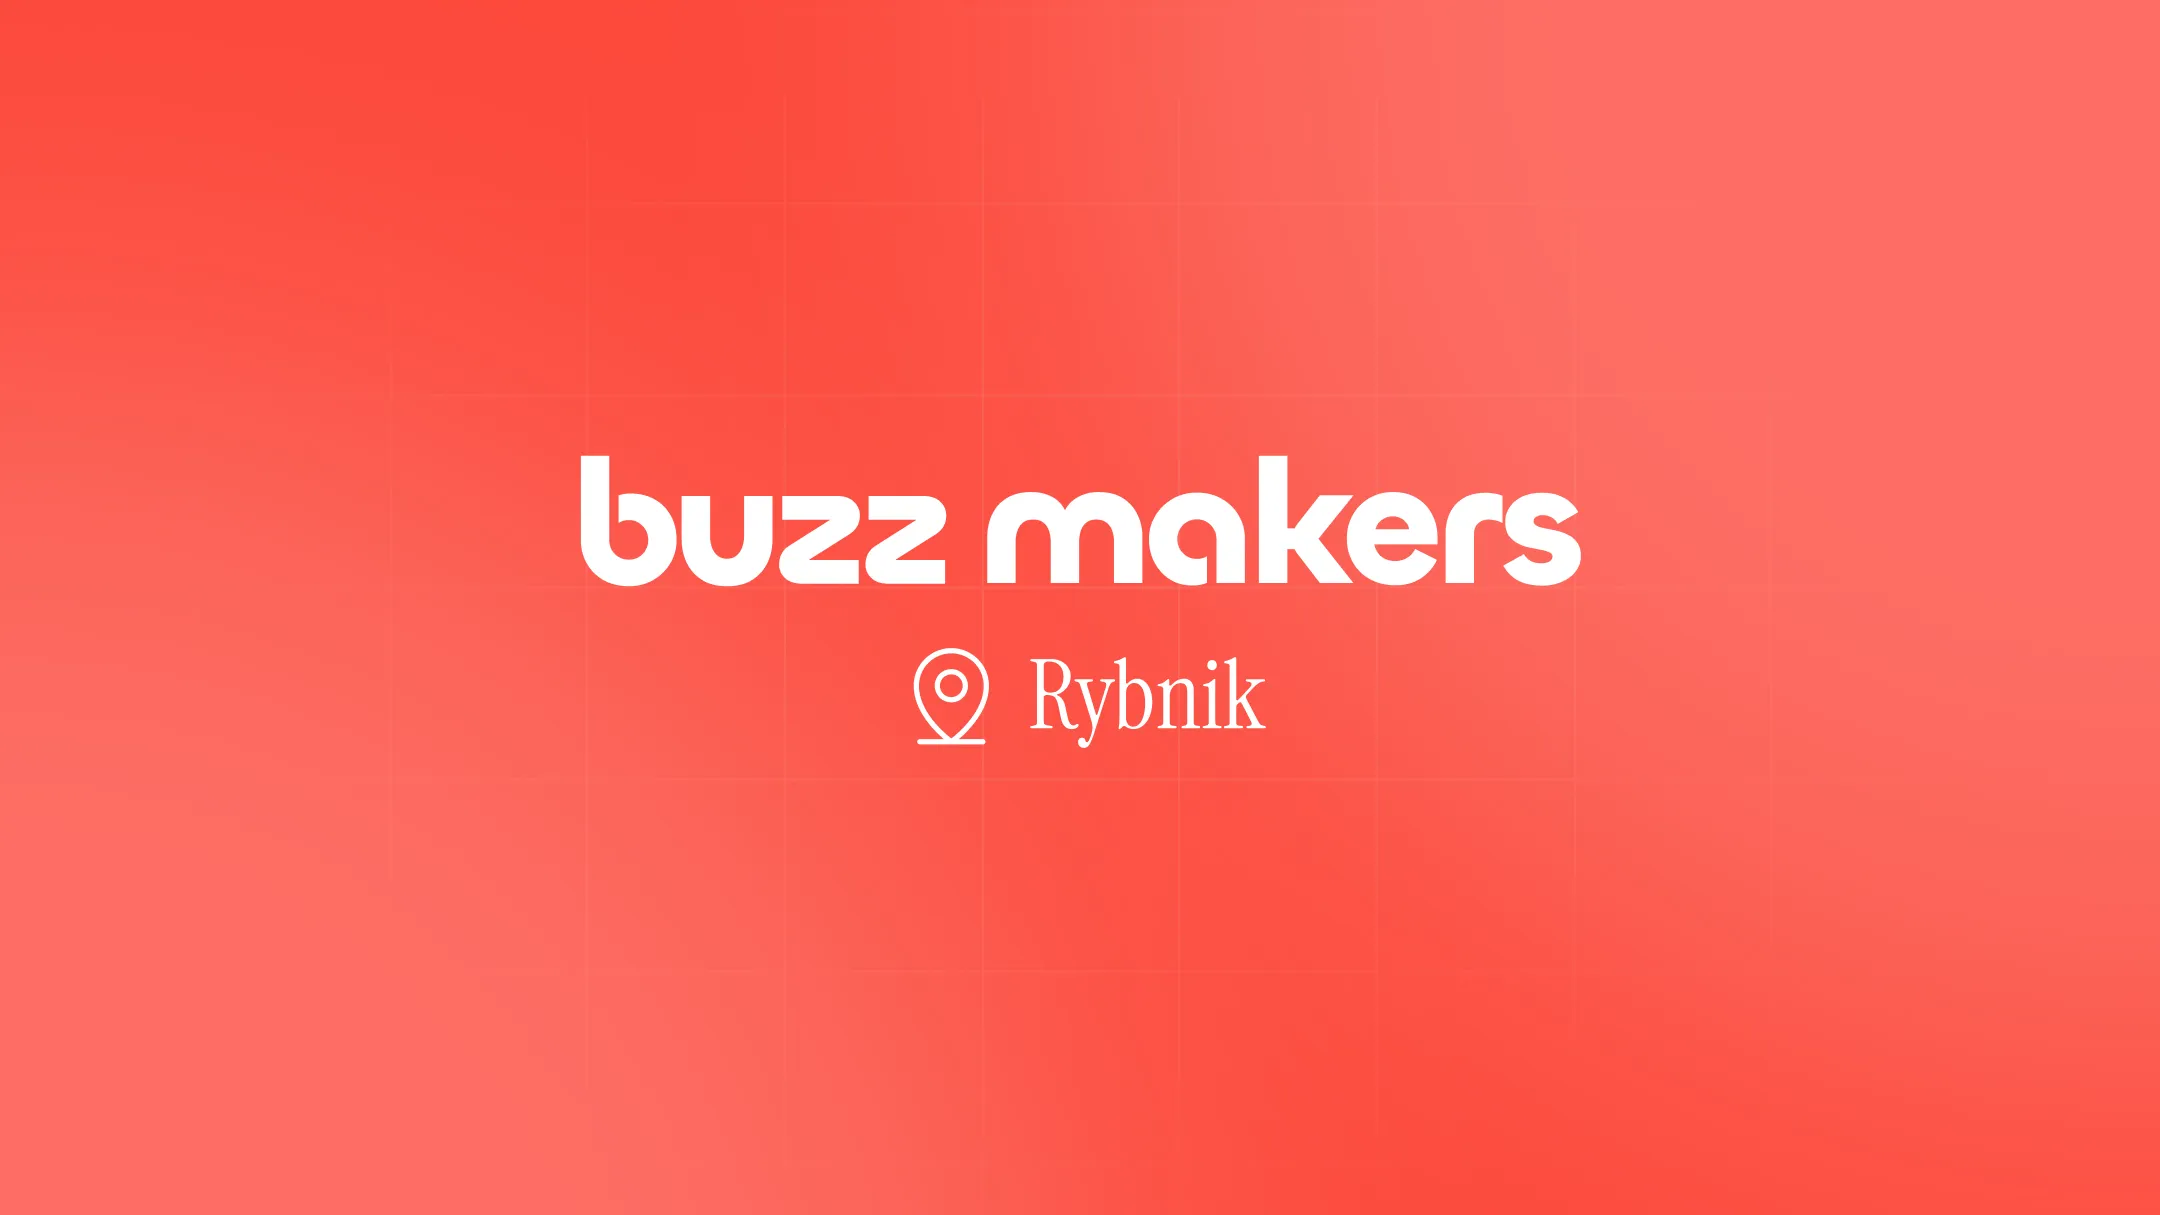 Agencja marketingowa Rybnik — zrób szum wokół Twojej marki razem z Buzz Makers